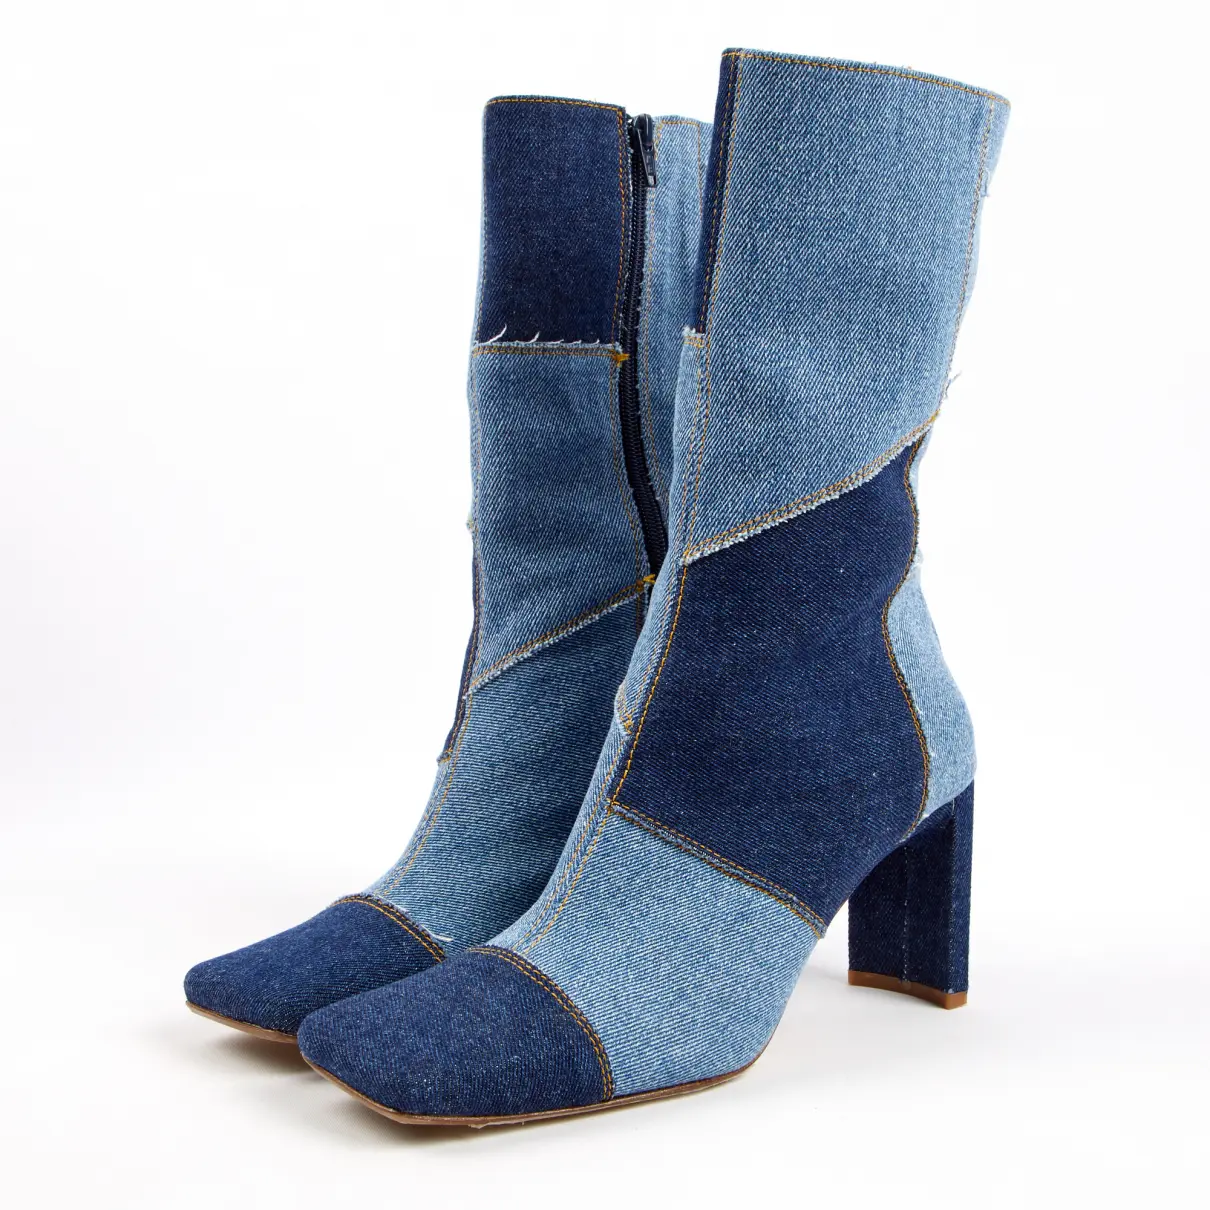 Buy Miista Cloth boots online